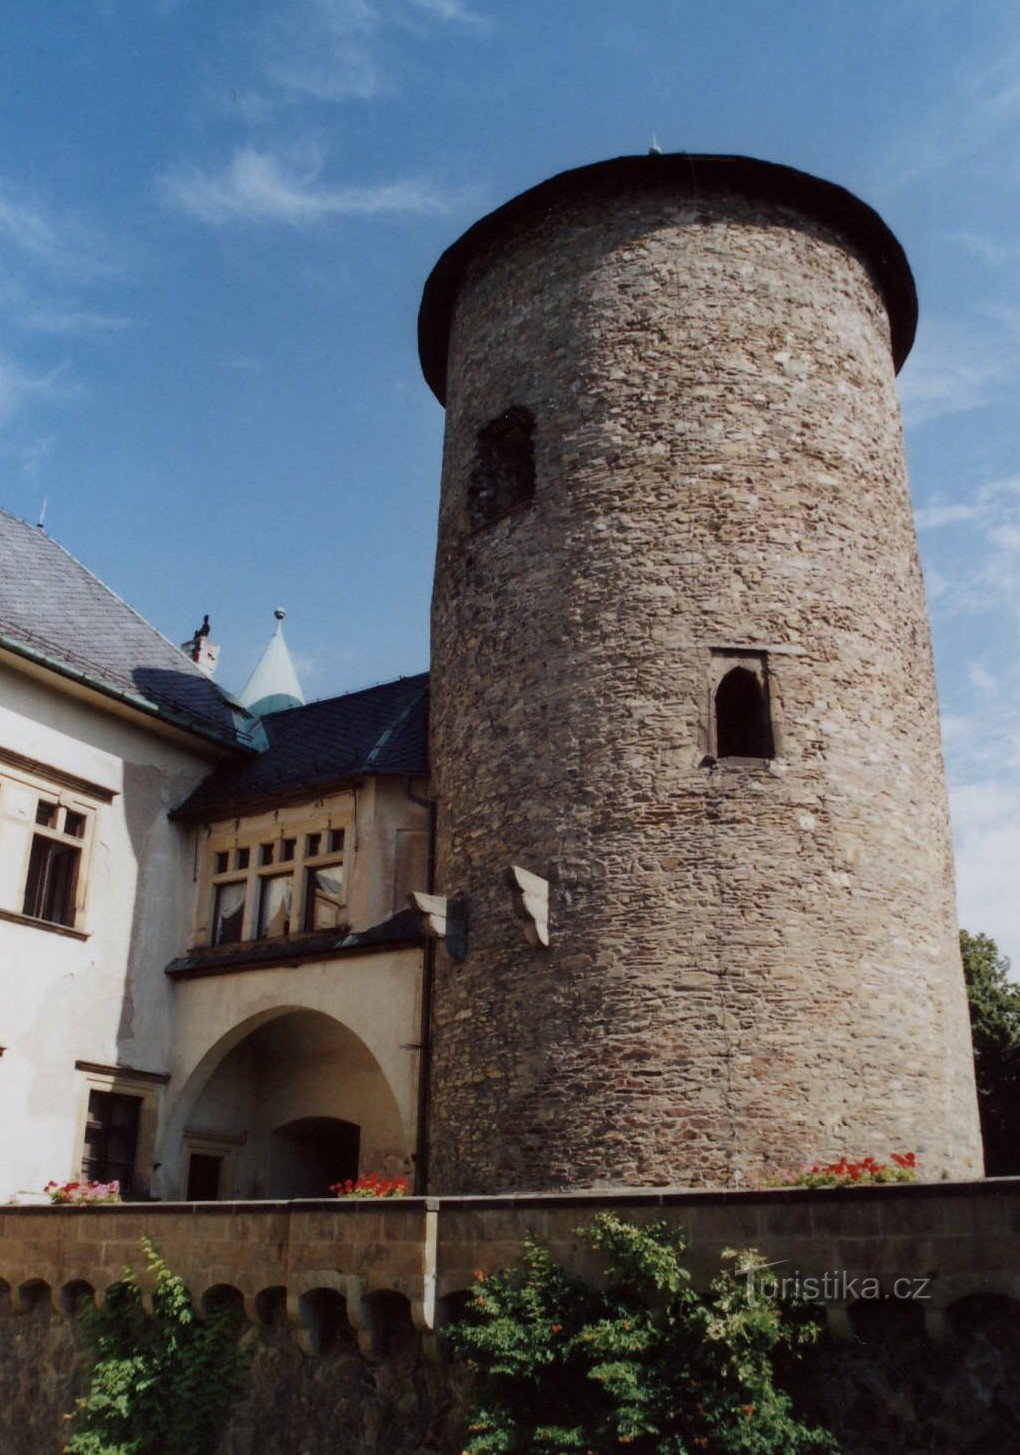 giọng lâu đài từ giữa thế kỷ 13.